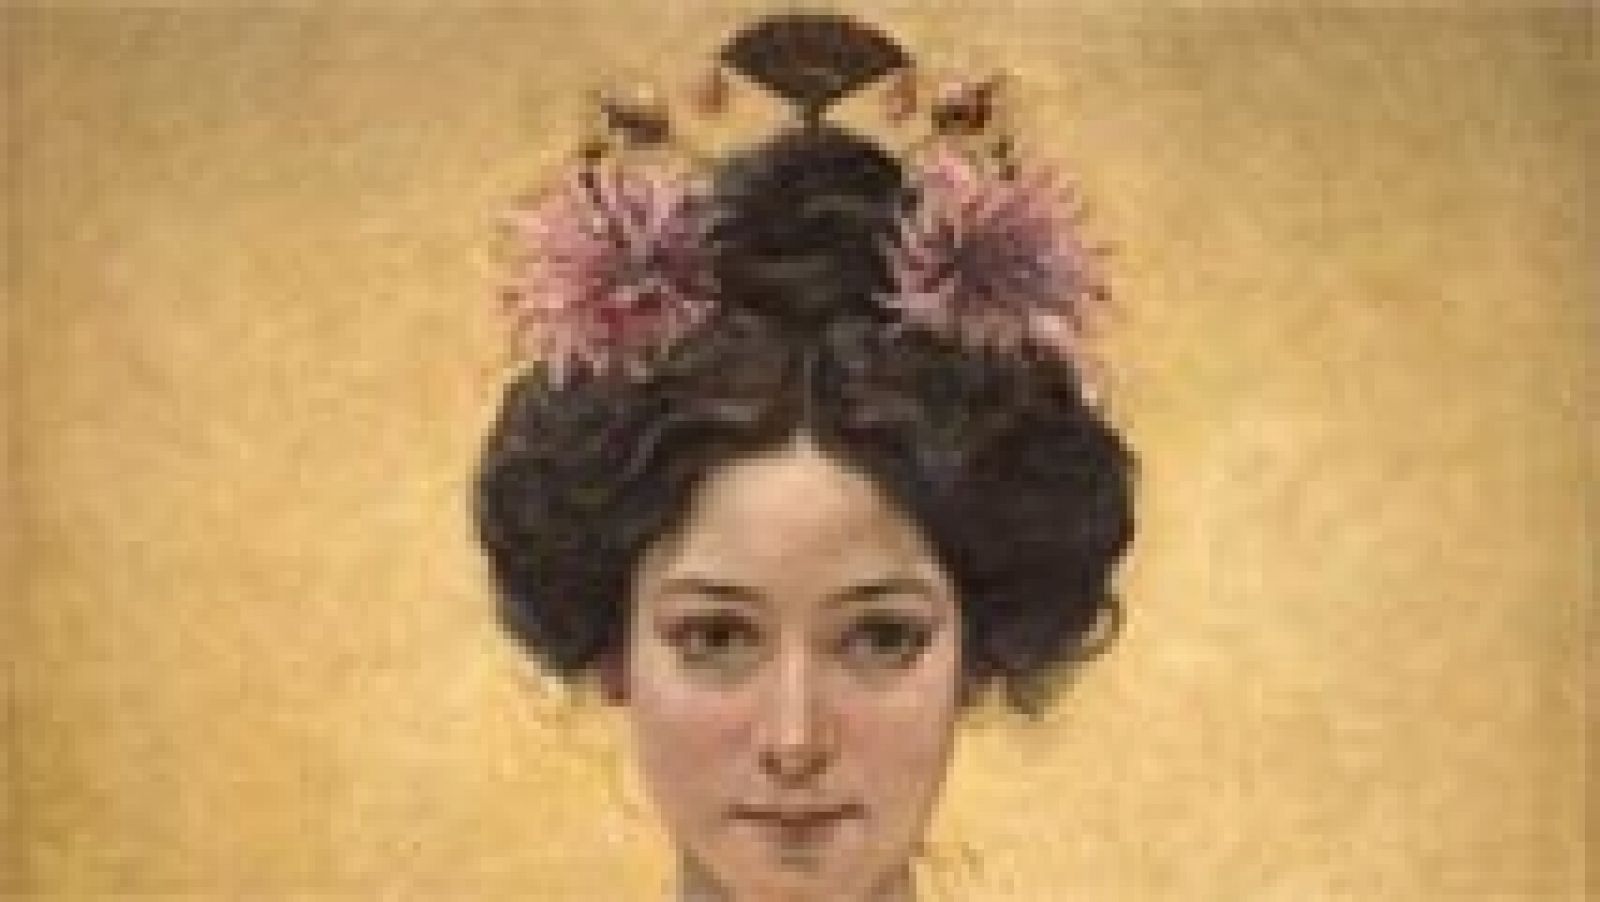 La trágica historia de la geisha Cio Cio San se estrenó en el Teatro Real de Madrid en 1907, precedida de una gran fama internacional y con una excelente acogida en los escenarios españoles.El estreno de esta ópera, una de las más representadas y sim